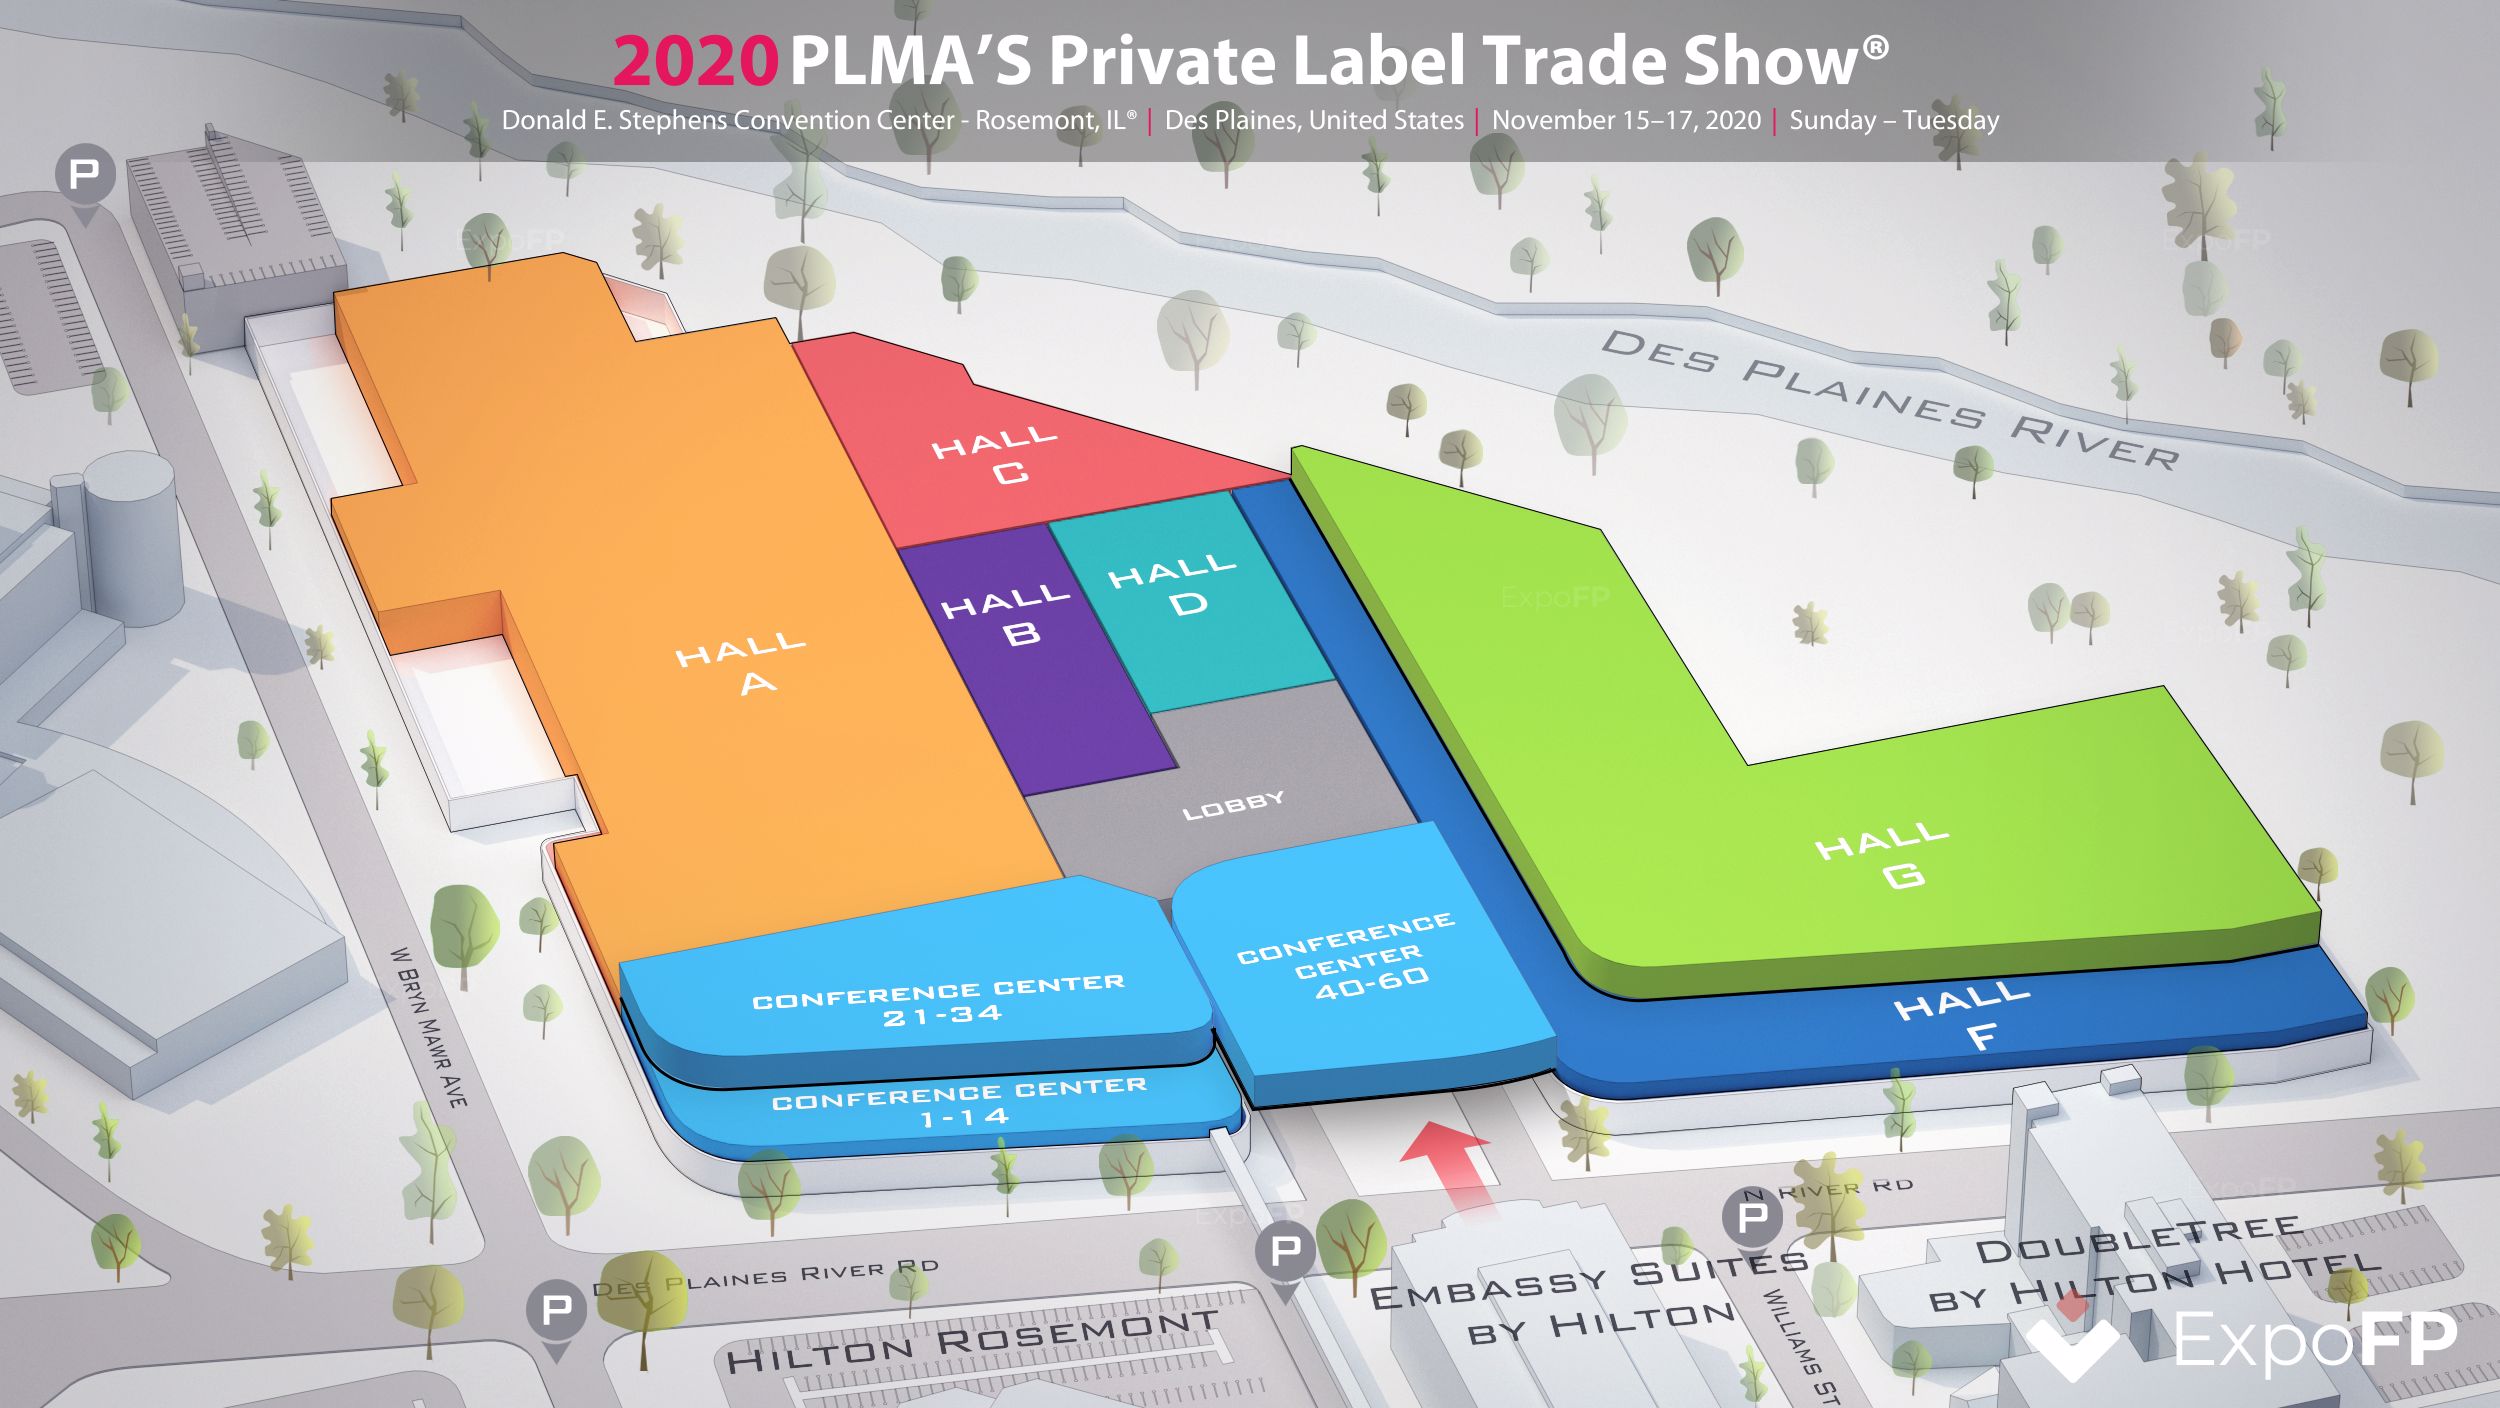 PLMA’s Private Label Trade Show 2020 in Donald E. Stephens